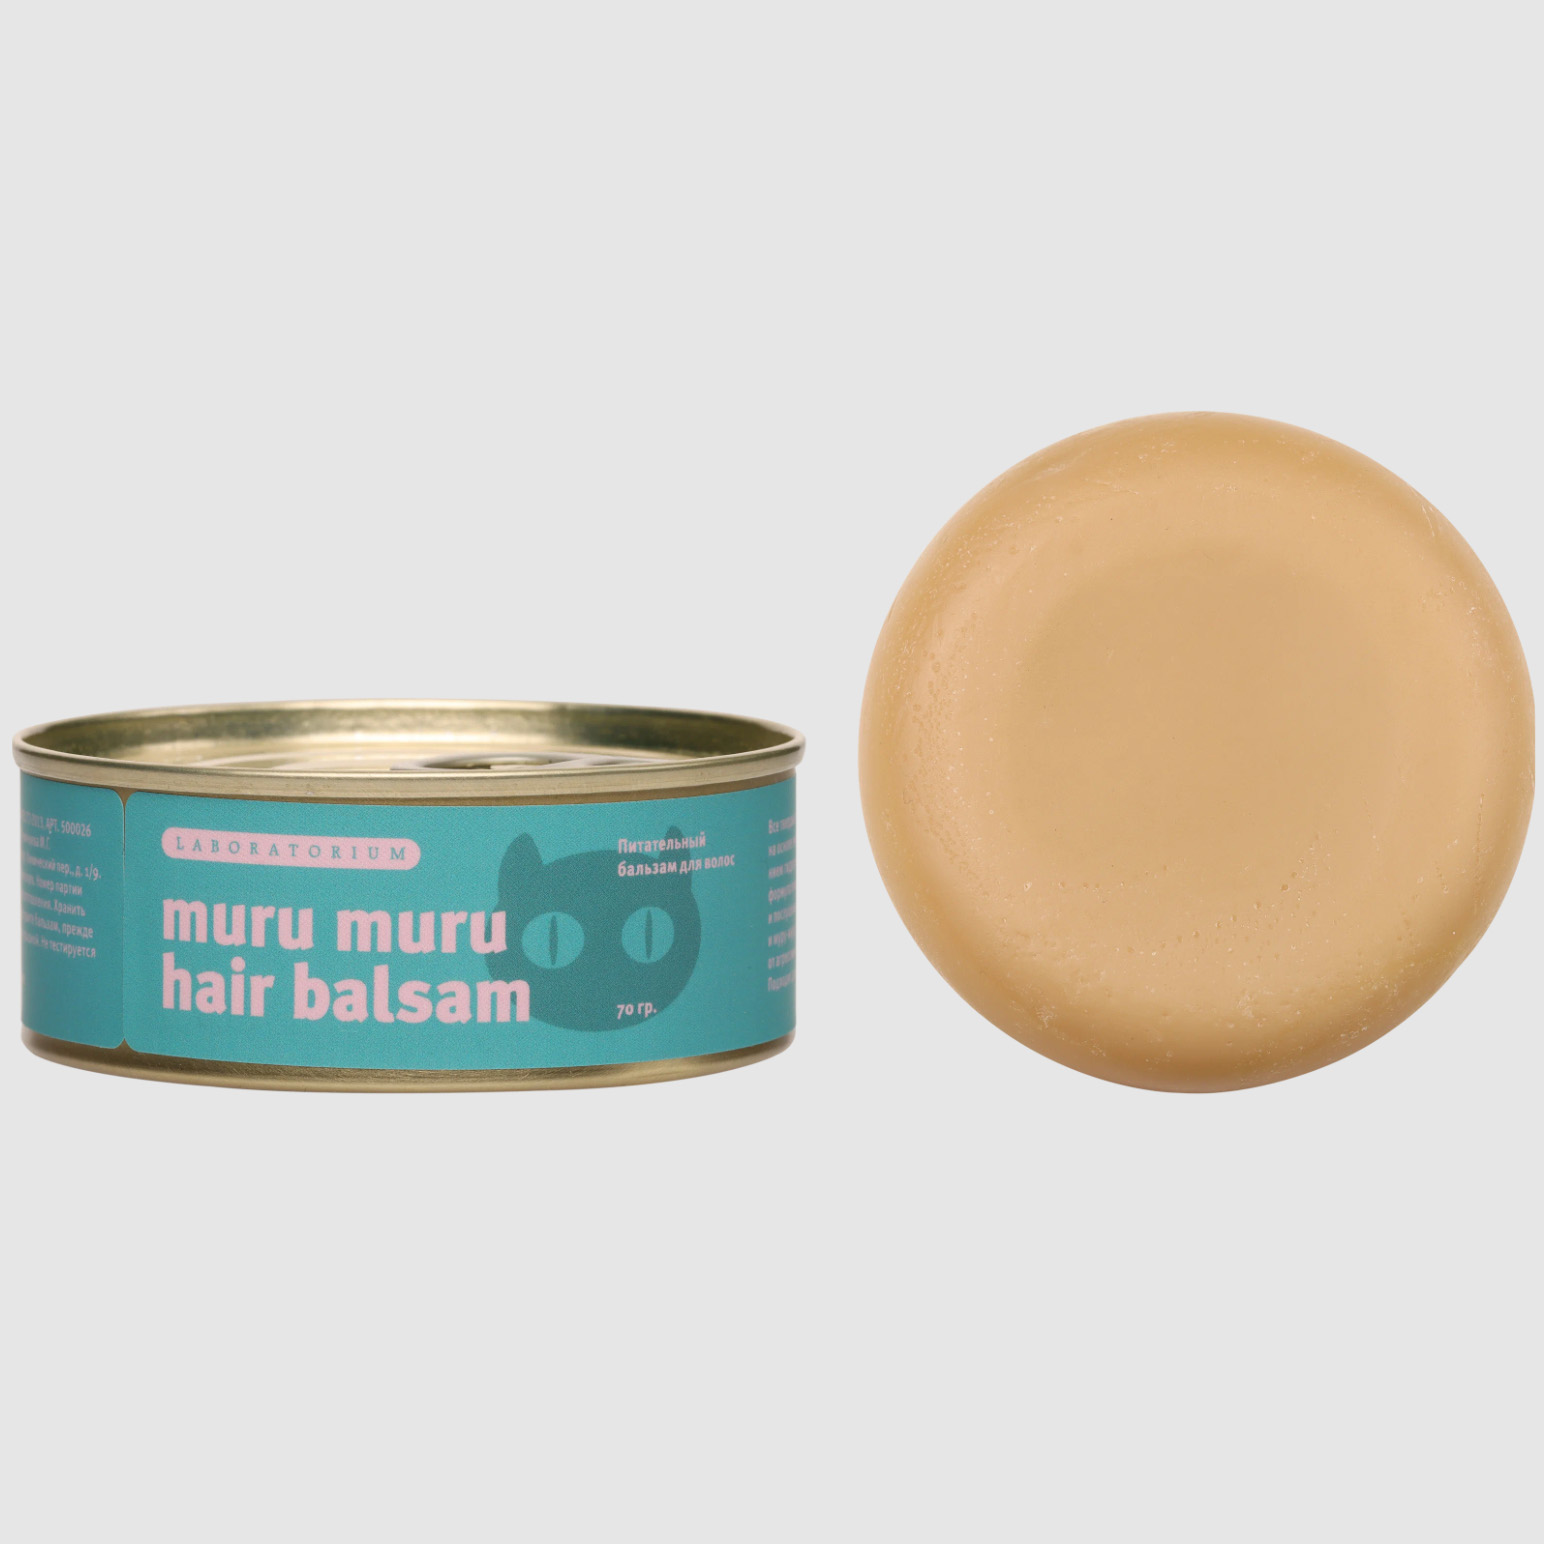 Бальзам для волос Laboratorium Muru Muru питательный, твердый, 70 г lcn крем для ног spa muru muru chapped skin balm 75 0